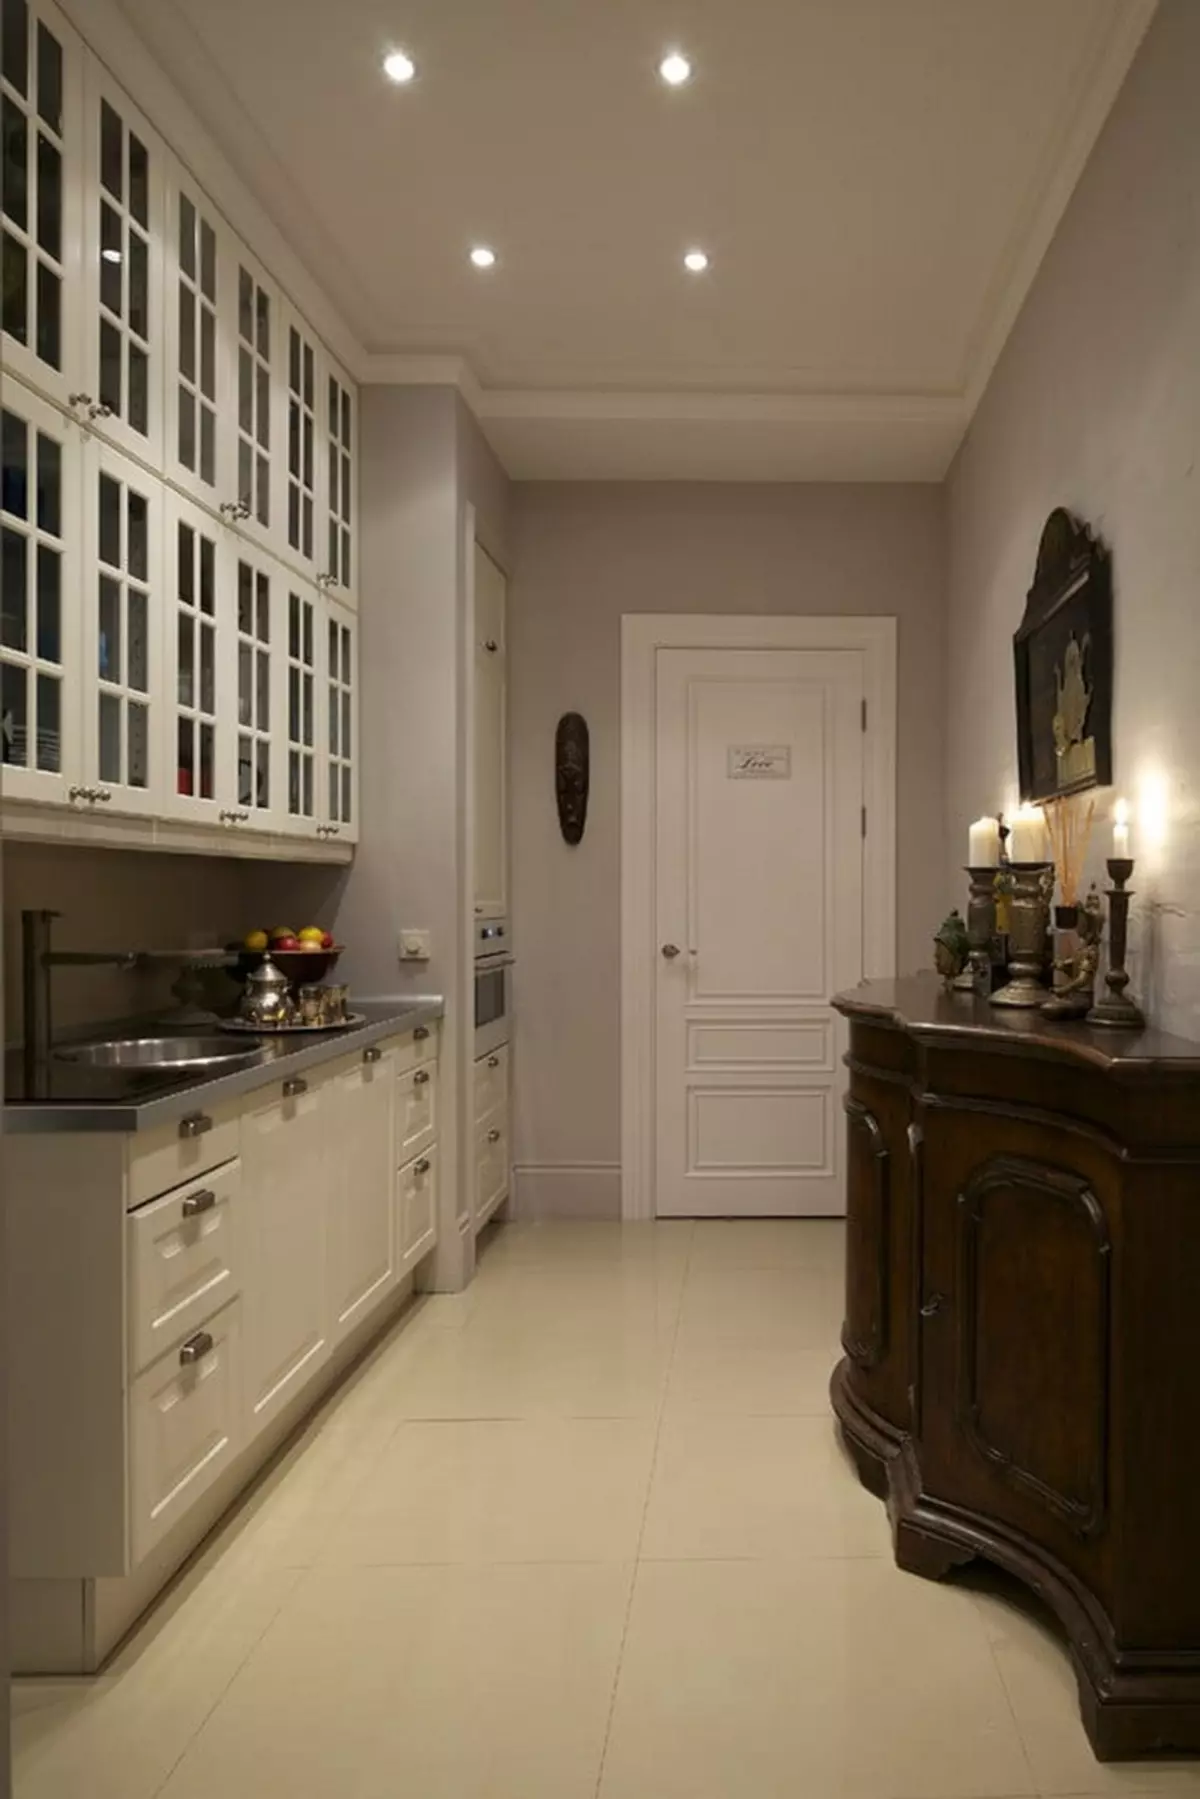 Гал тогооны өрөөний хаалга (62 зураг): Гал тогооны өрөөний зохион байгуулалт нь хувийн байшин, орон сууцанд нэгтгэсэн гал тогооны өрөө. Дотоод дизайны танхимд нэг хэв маягаар байрладаг 9487_48